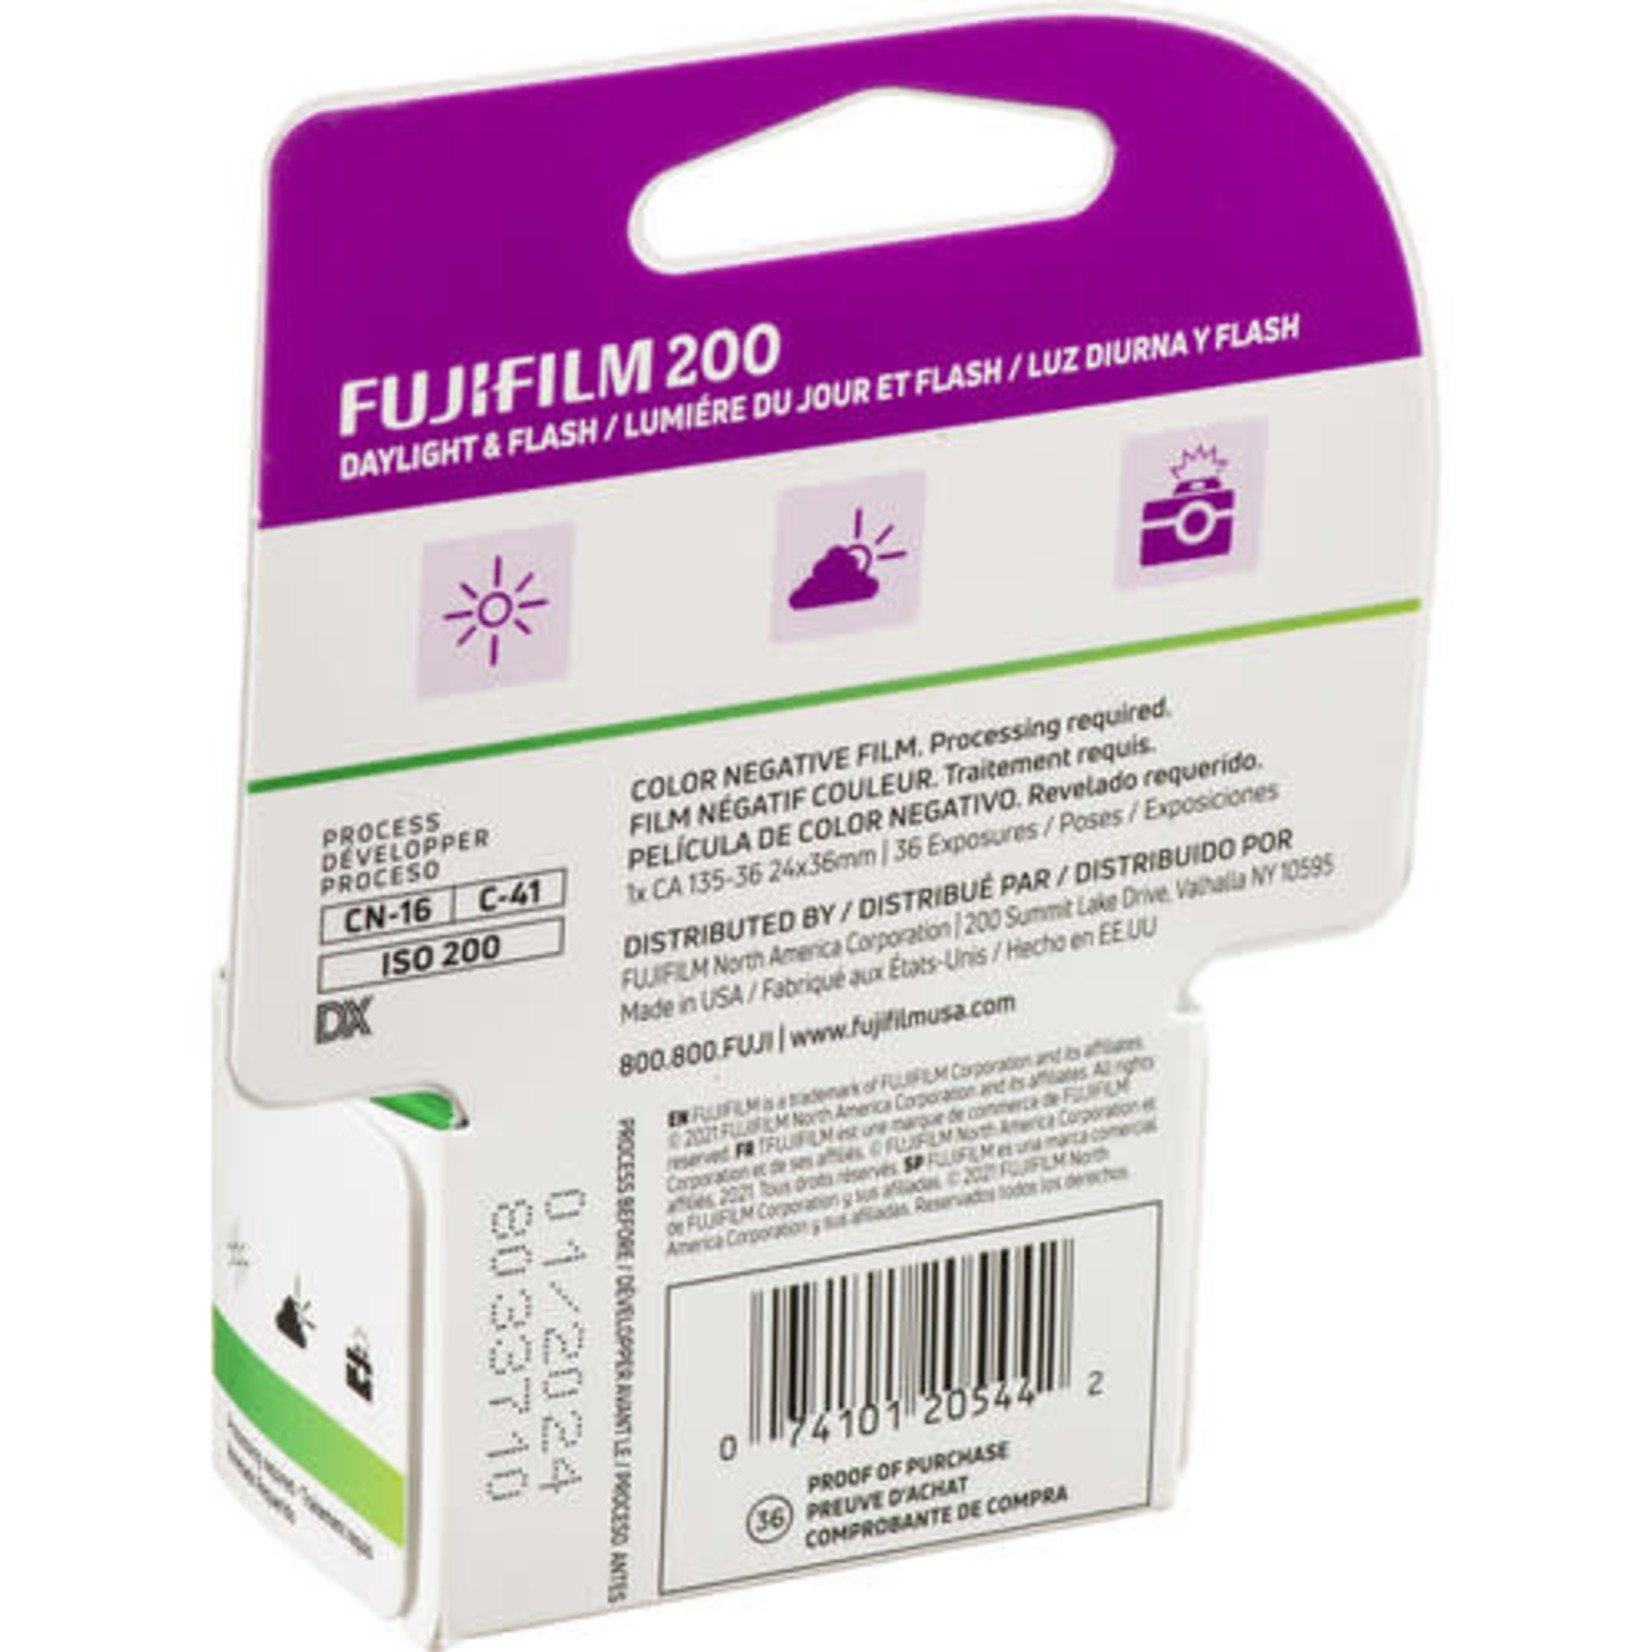 FujiFilm FUJIFILM 200 Color Negative Film (35mm Roll Film, 36 Exposures)